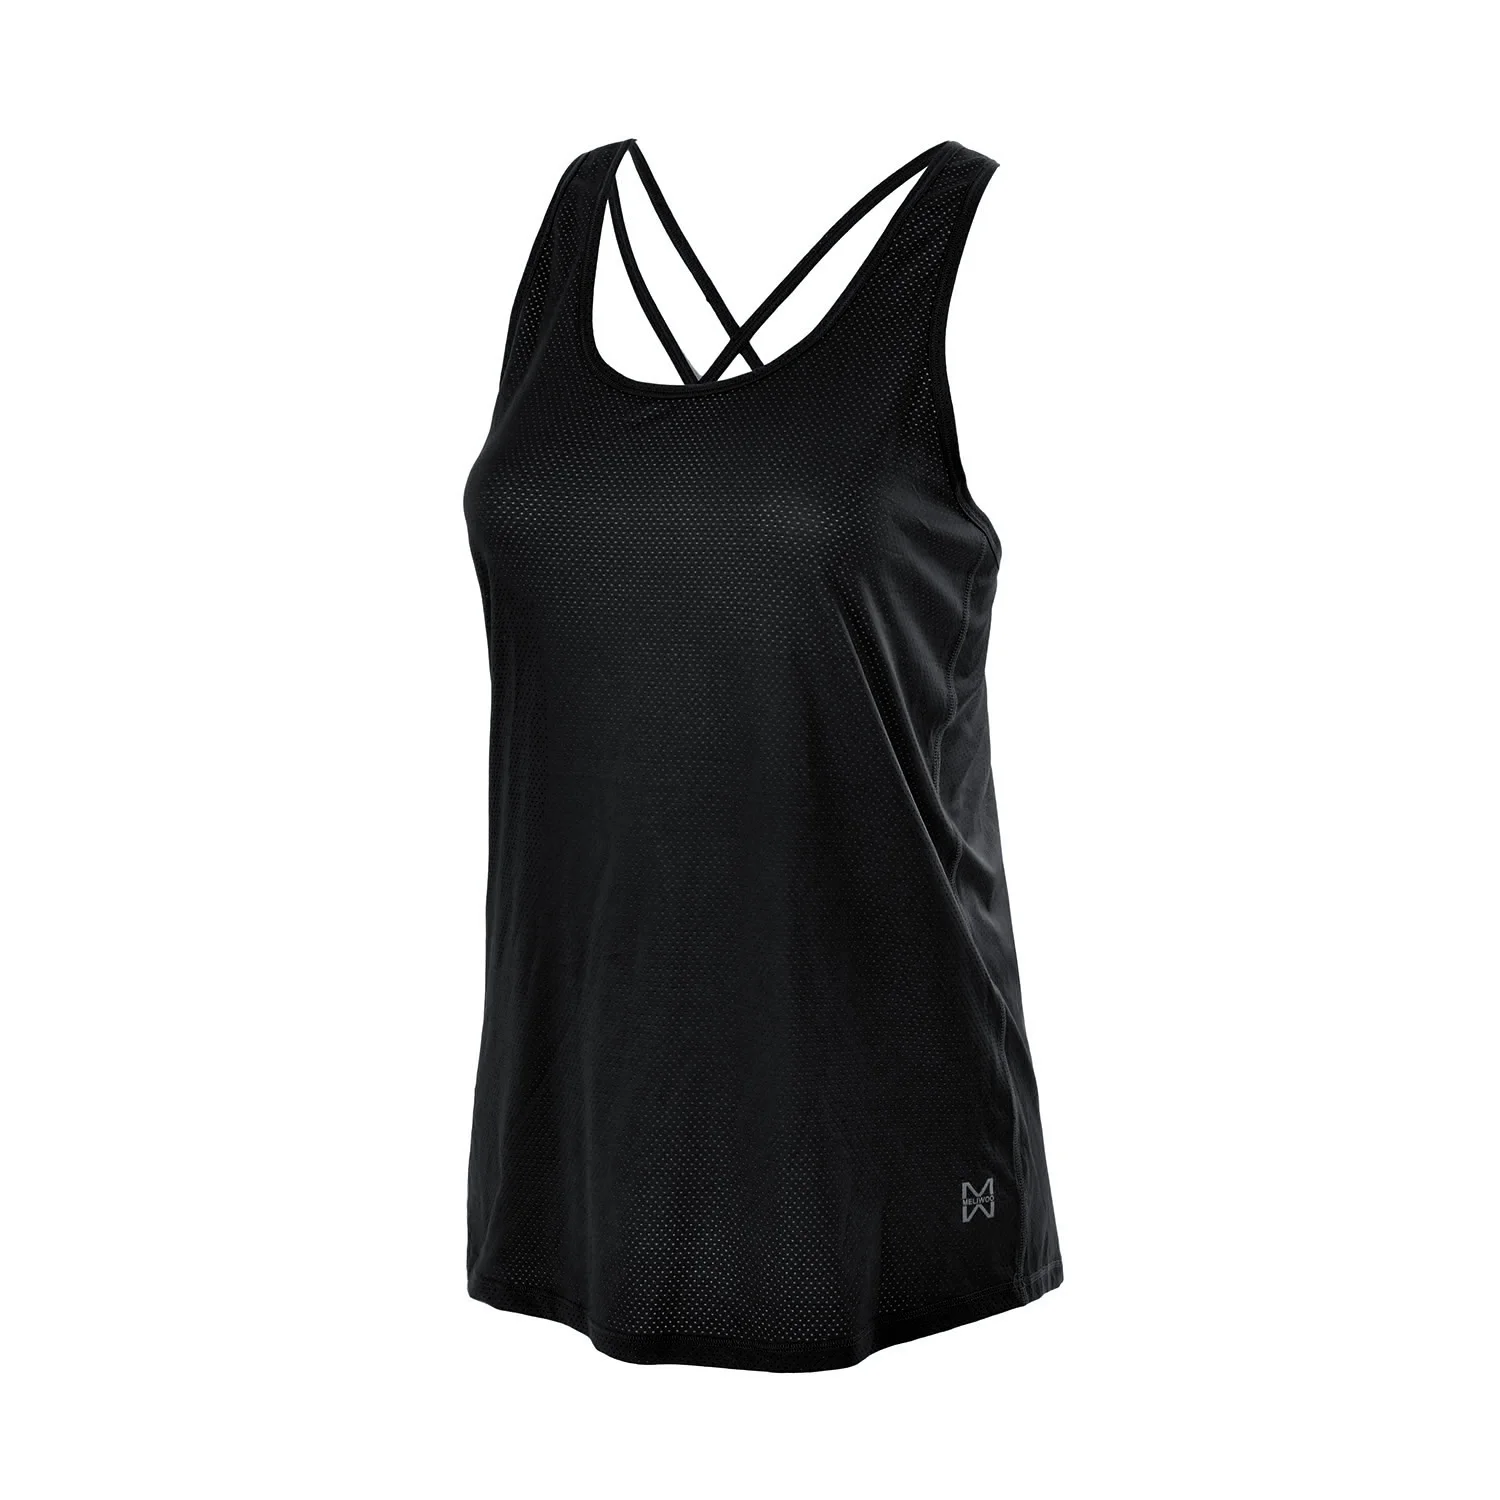 La Isla женская спортивная одежда крутые сетчатые тренировочные топы с перекрестной спинкой - Цвет: Black01